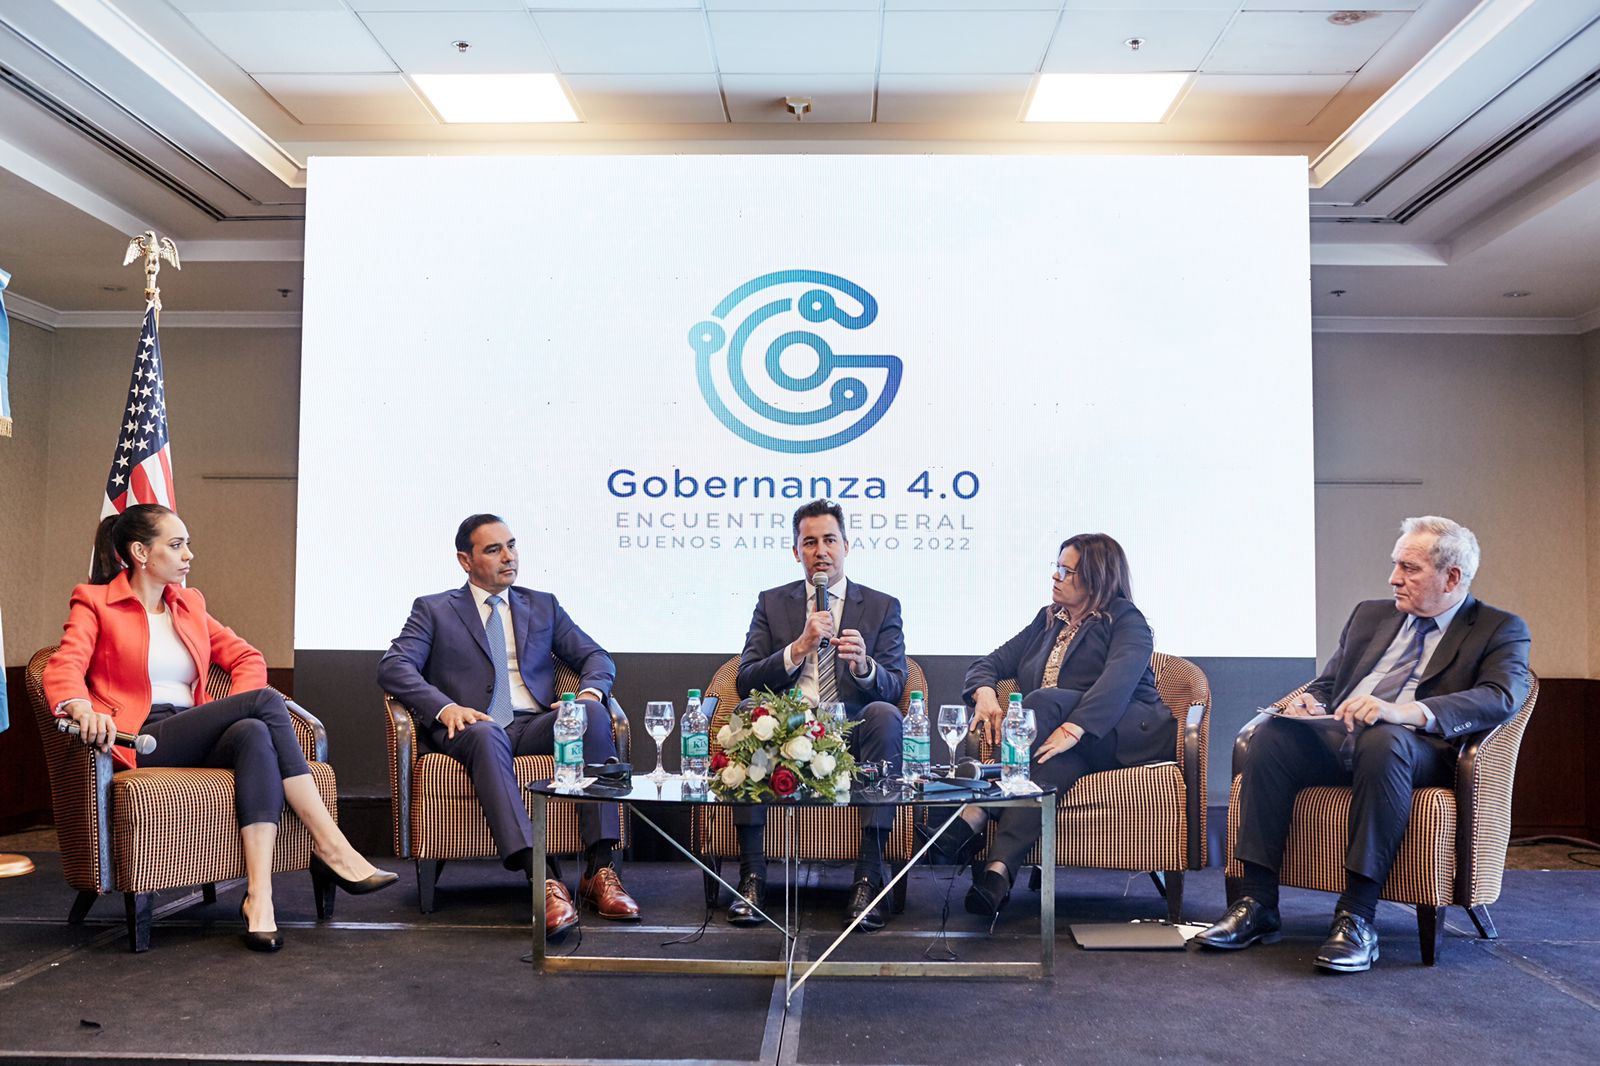 Manuel Calvo resaltó la transformación digital de Córdoba en el encuentro Federal Gobernanza 4.0 • Canal C